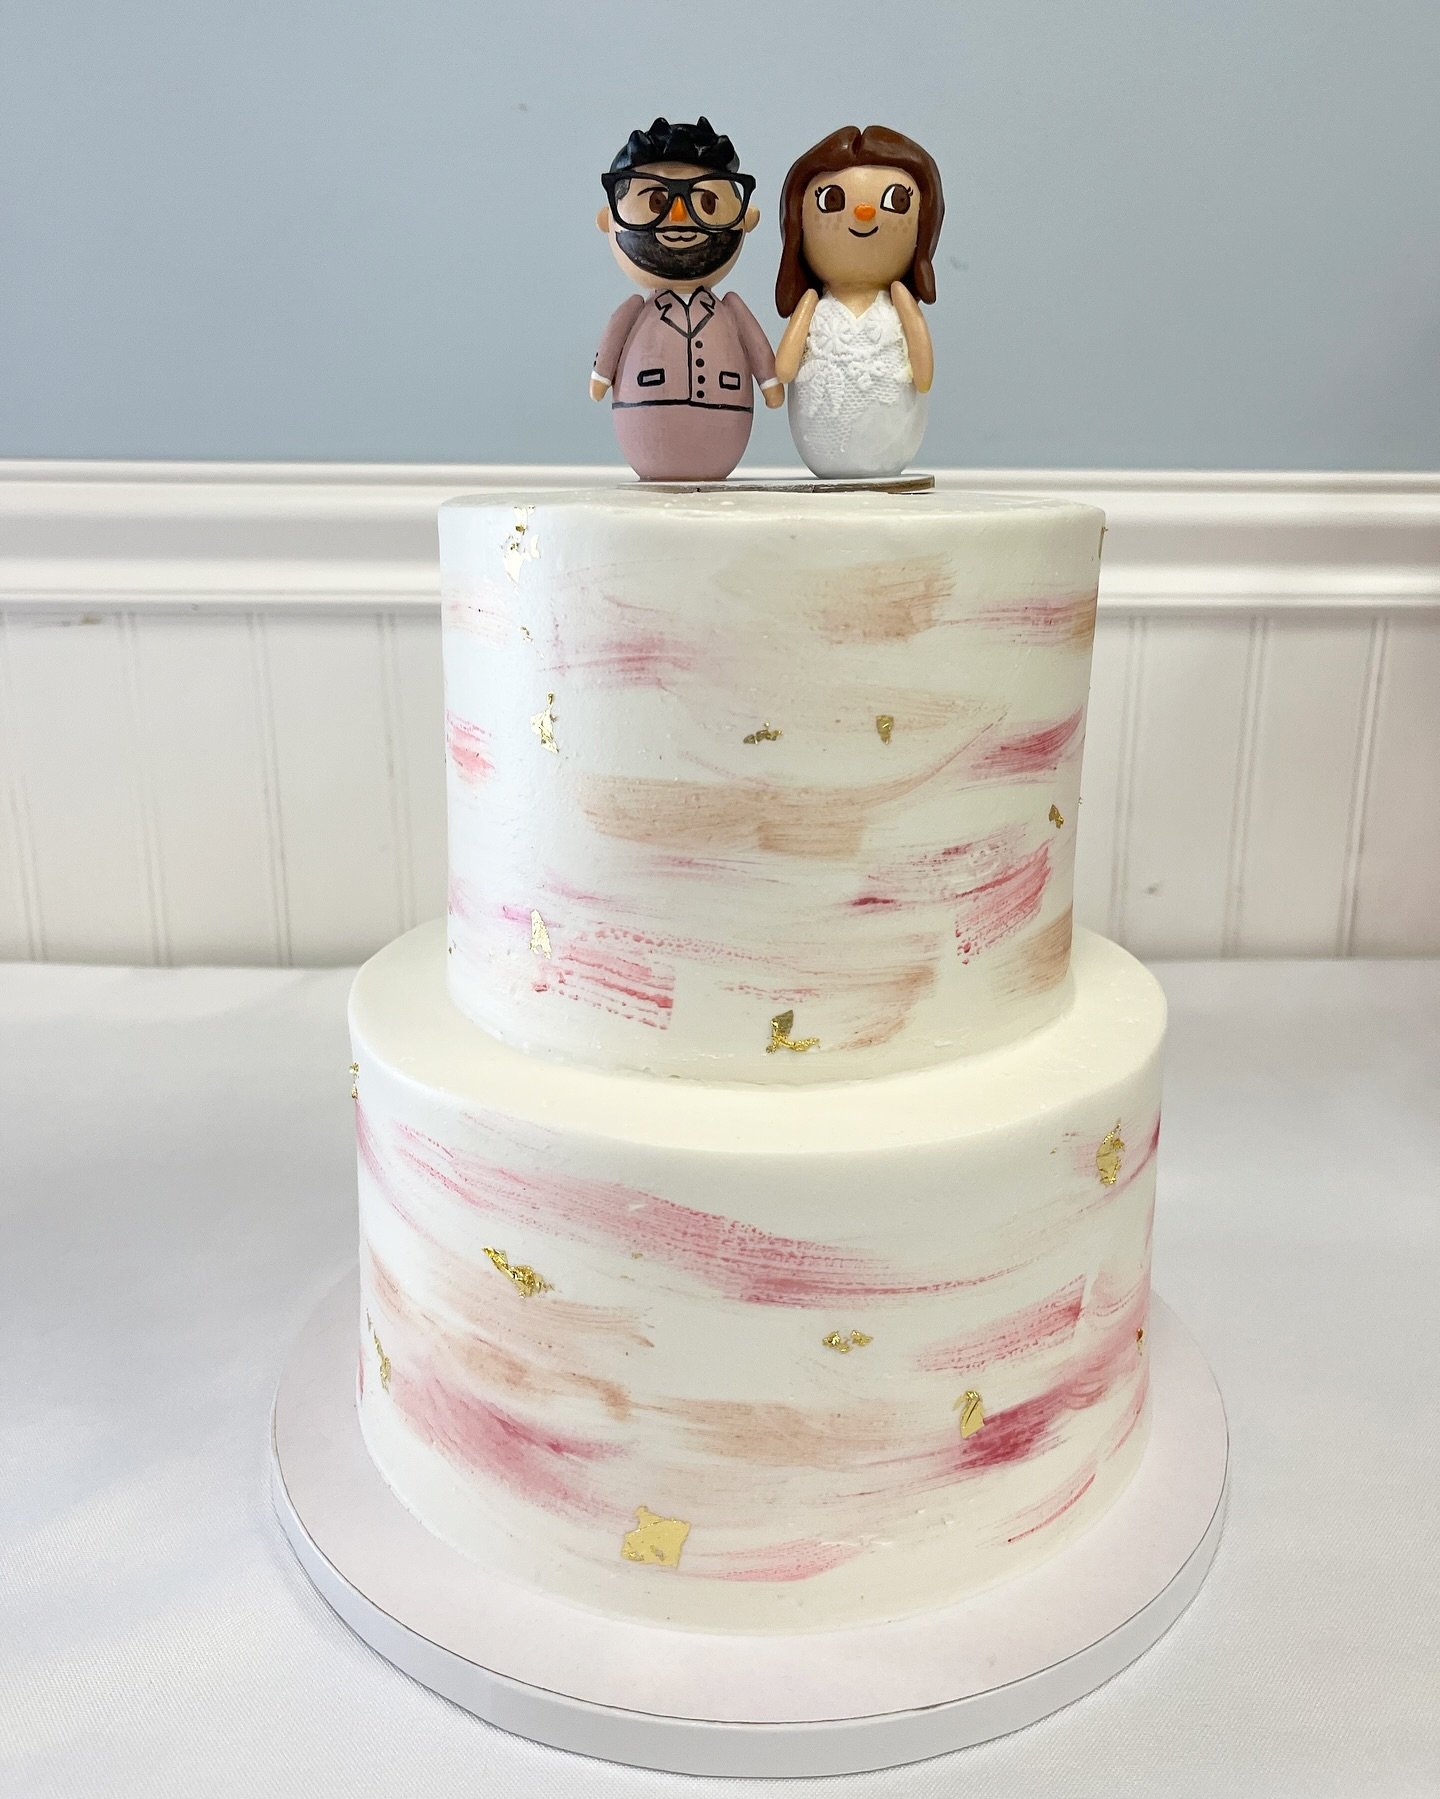 Wedding Cake Wednesday
.
.
.
.
.
#weddingcake #weddingcakes #cake #cakedecorating #cakedesign #cakes #cakesofinstagram #cakestagram #cakesofig #cakesdaily #cakesofinsta #cakesgram #buttercream #buttercreamcake #buttercreamcakes #buttercreamfrosting #